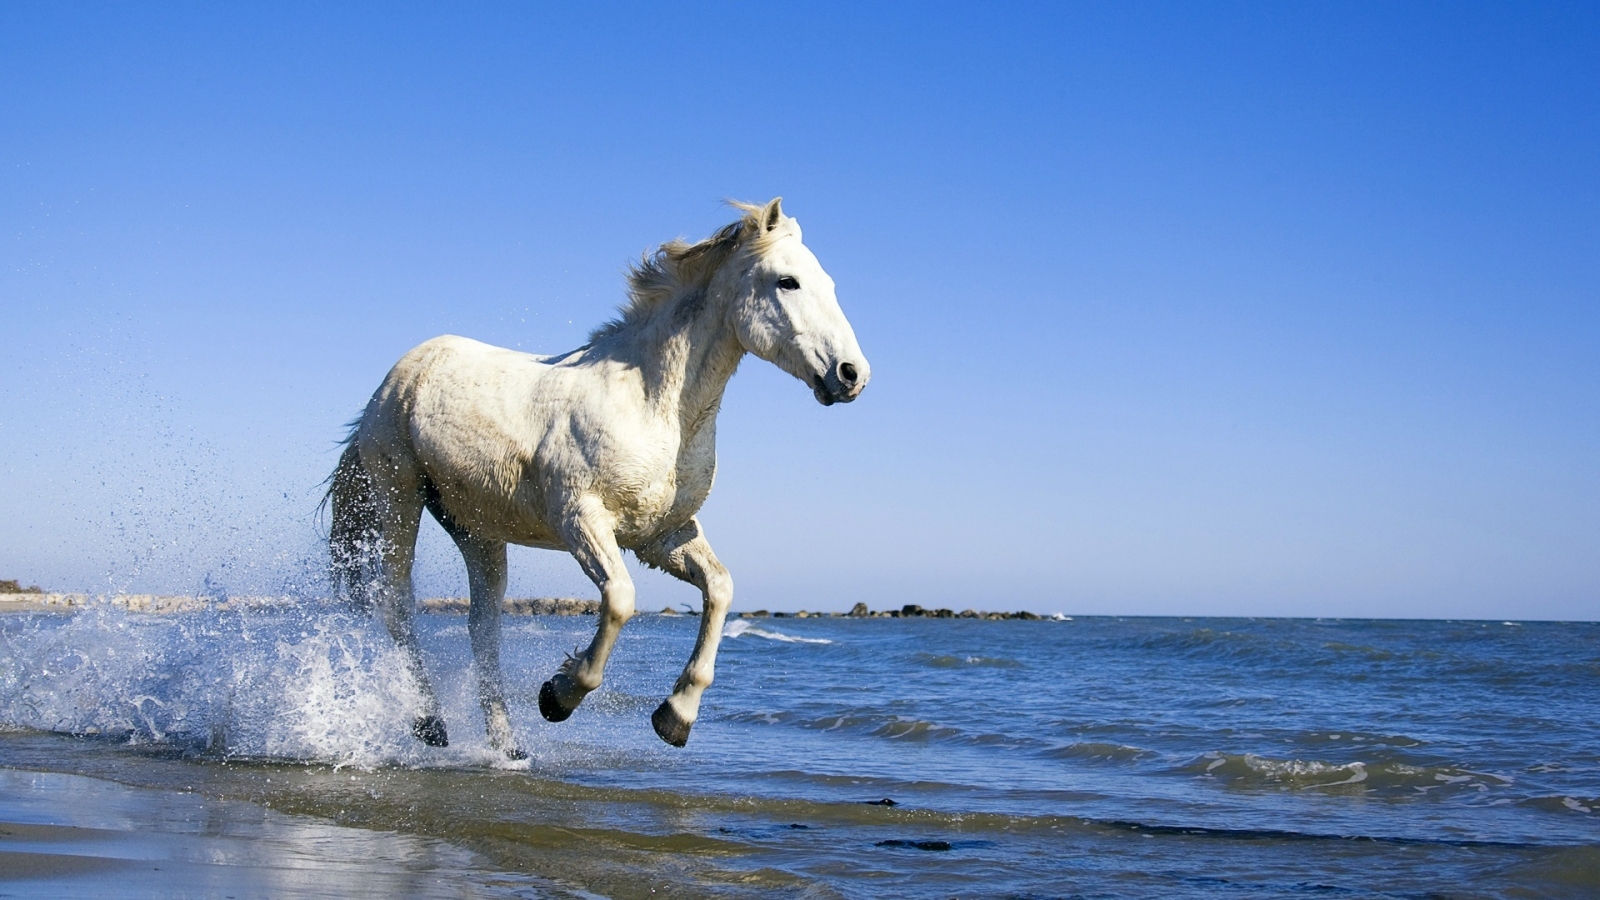 White Horse Running on the Beach for 1600 x 900 HDTV resolution